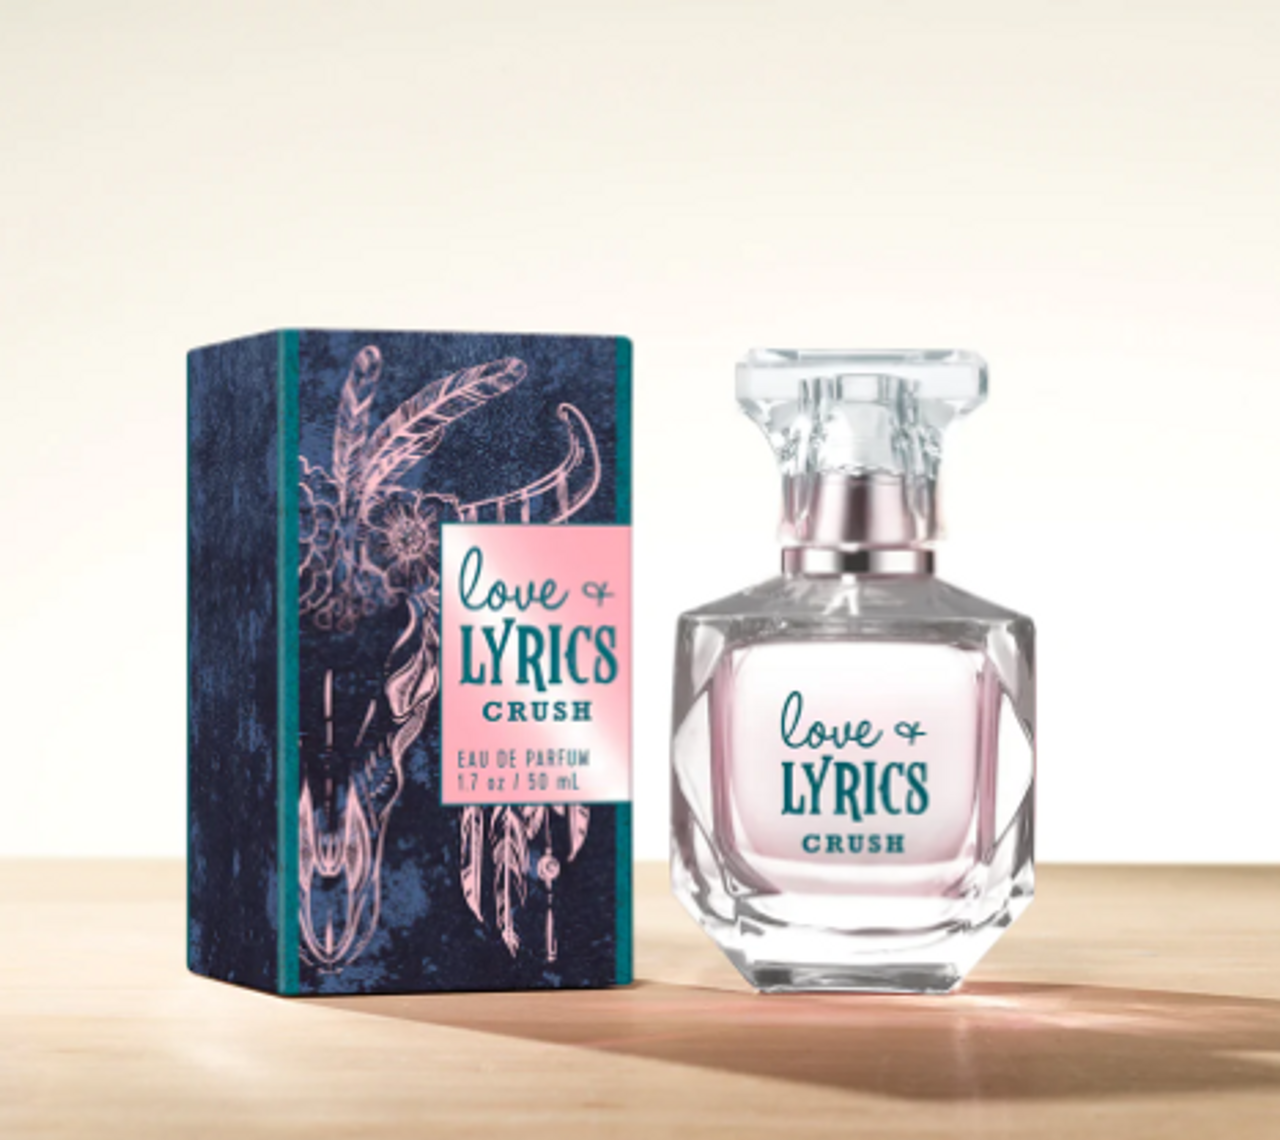 Love & Lyrics Crush Perfume